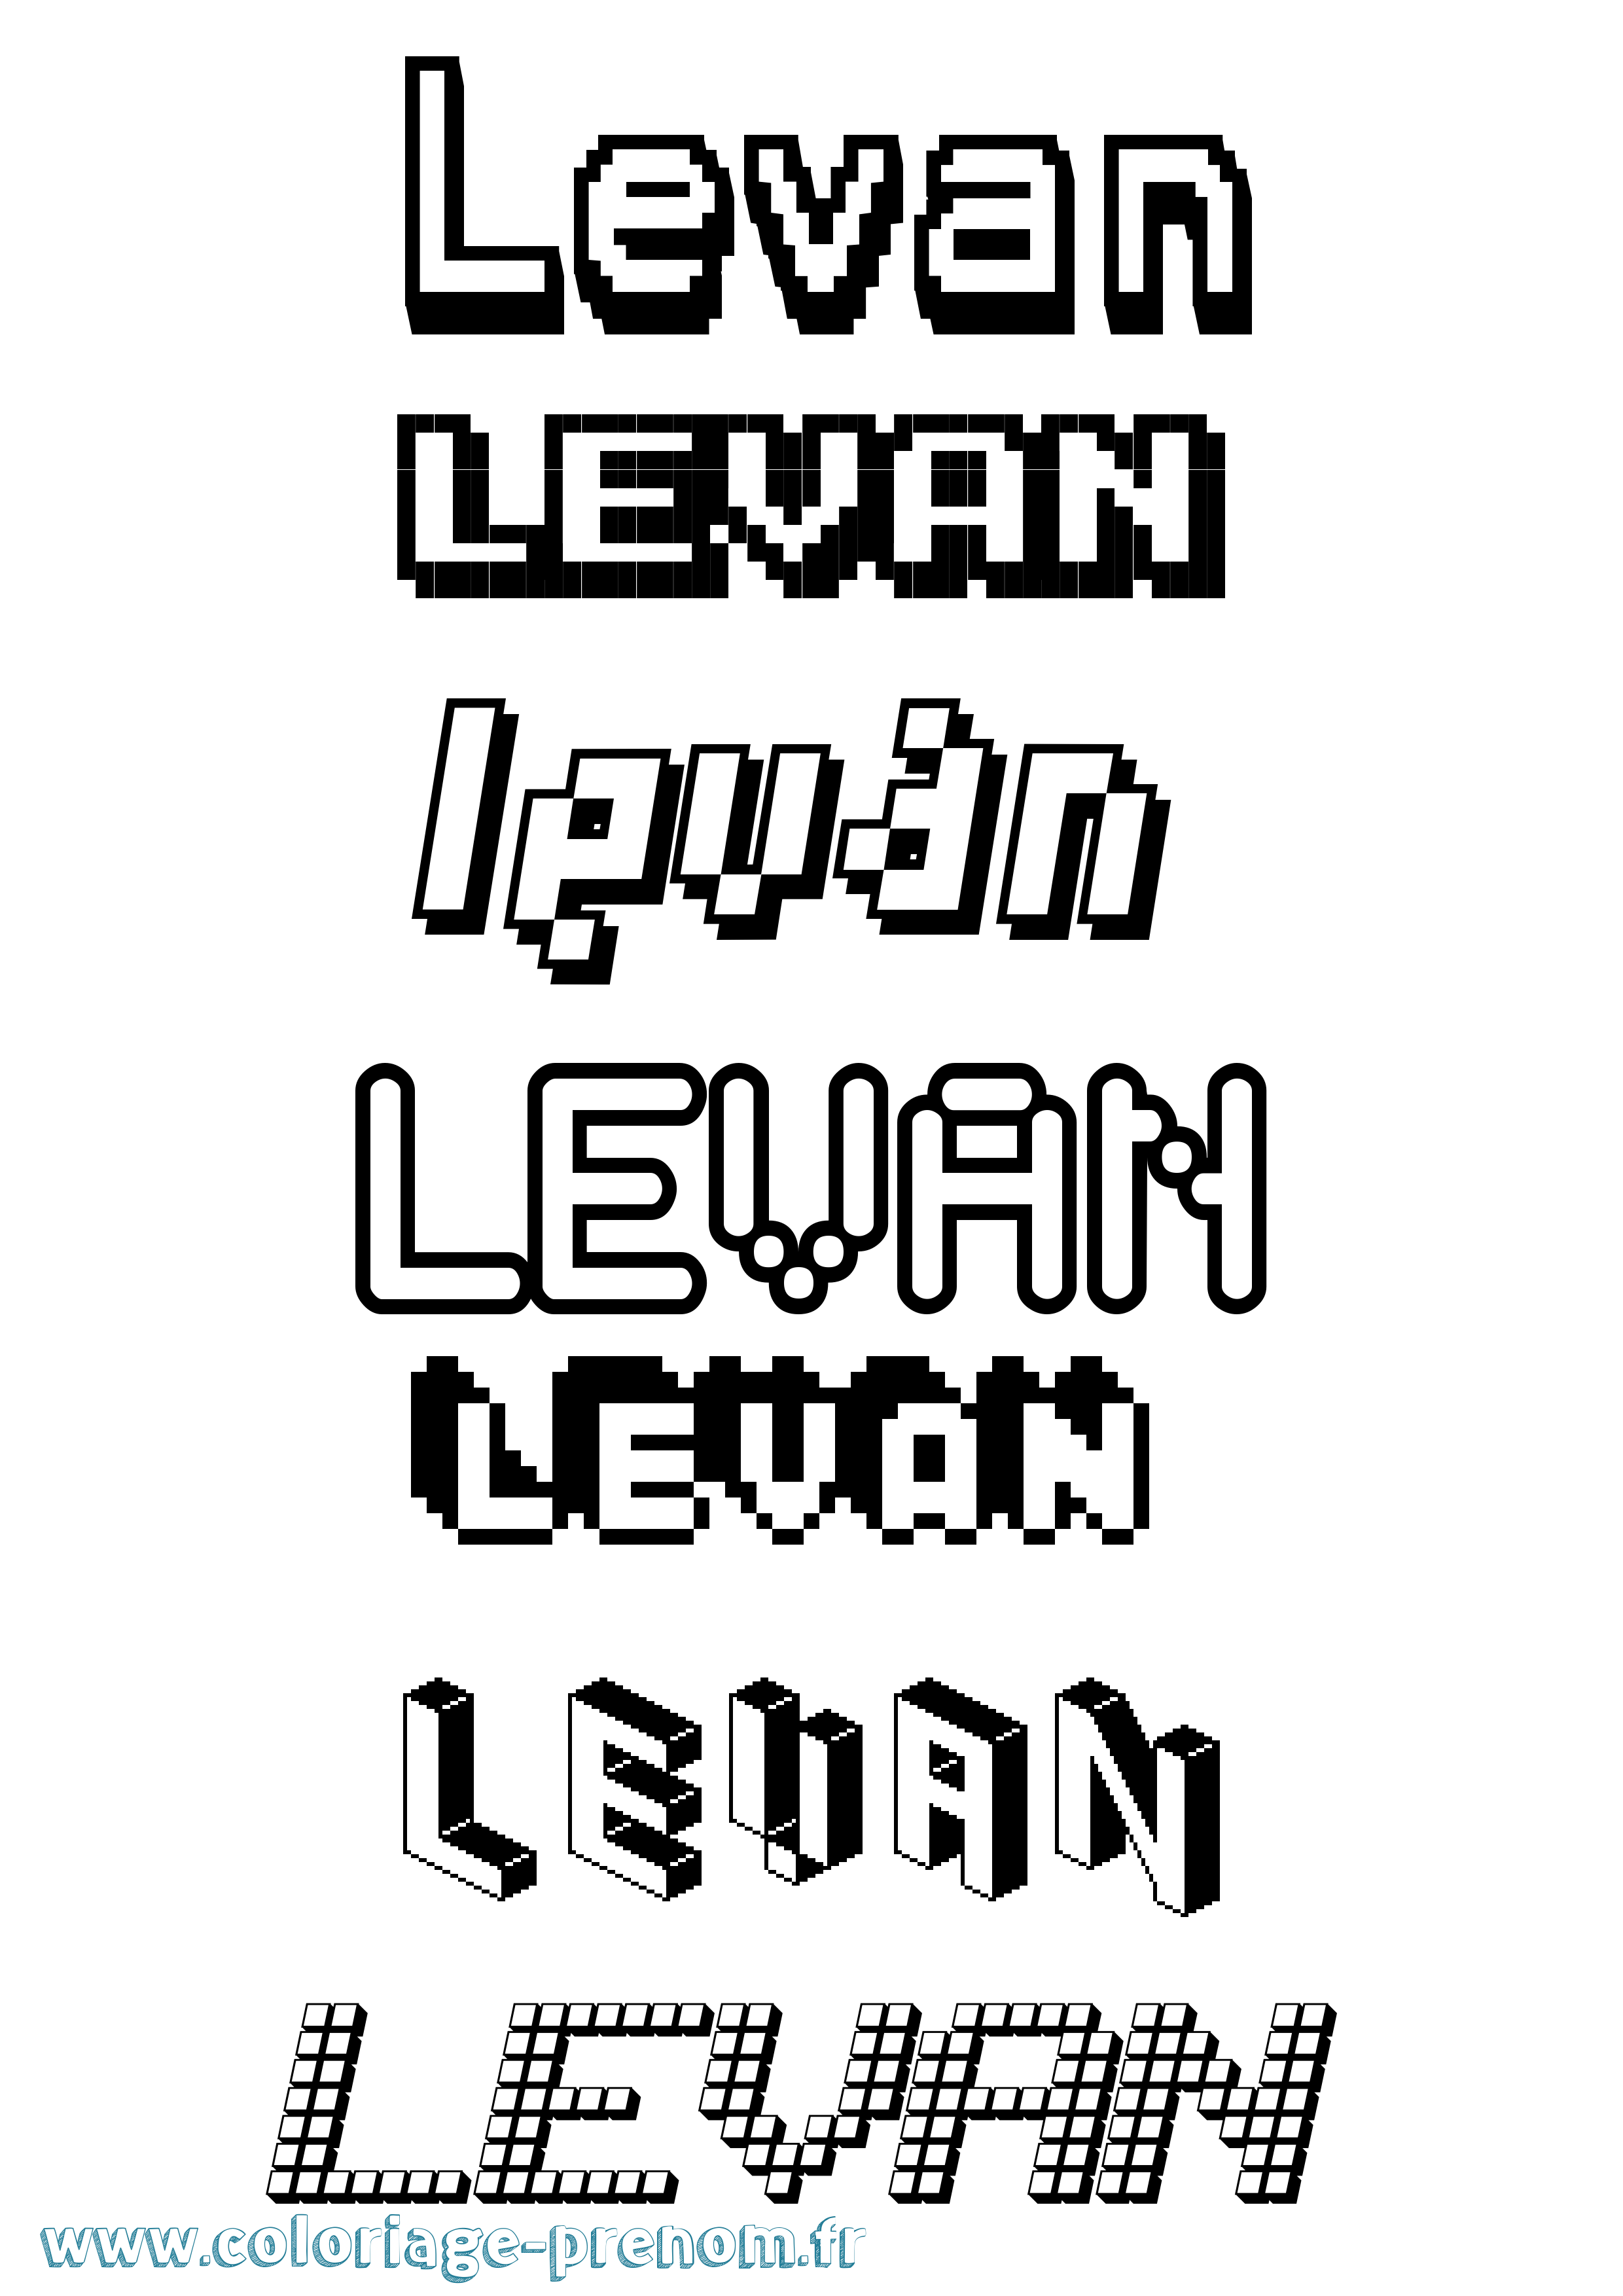 Coloriage prénom Levan Pixel